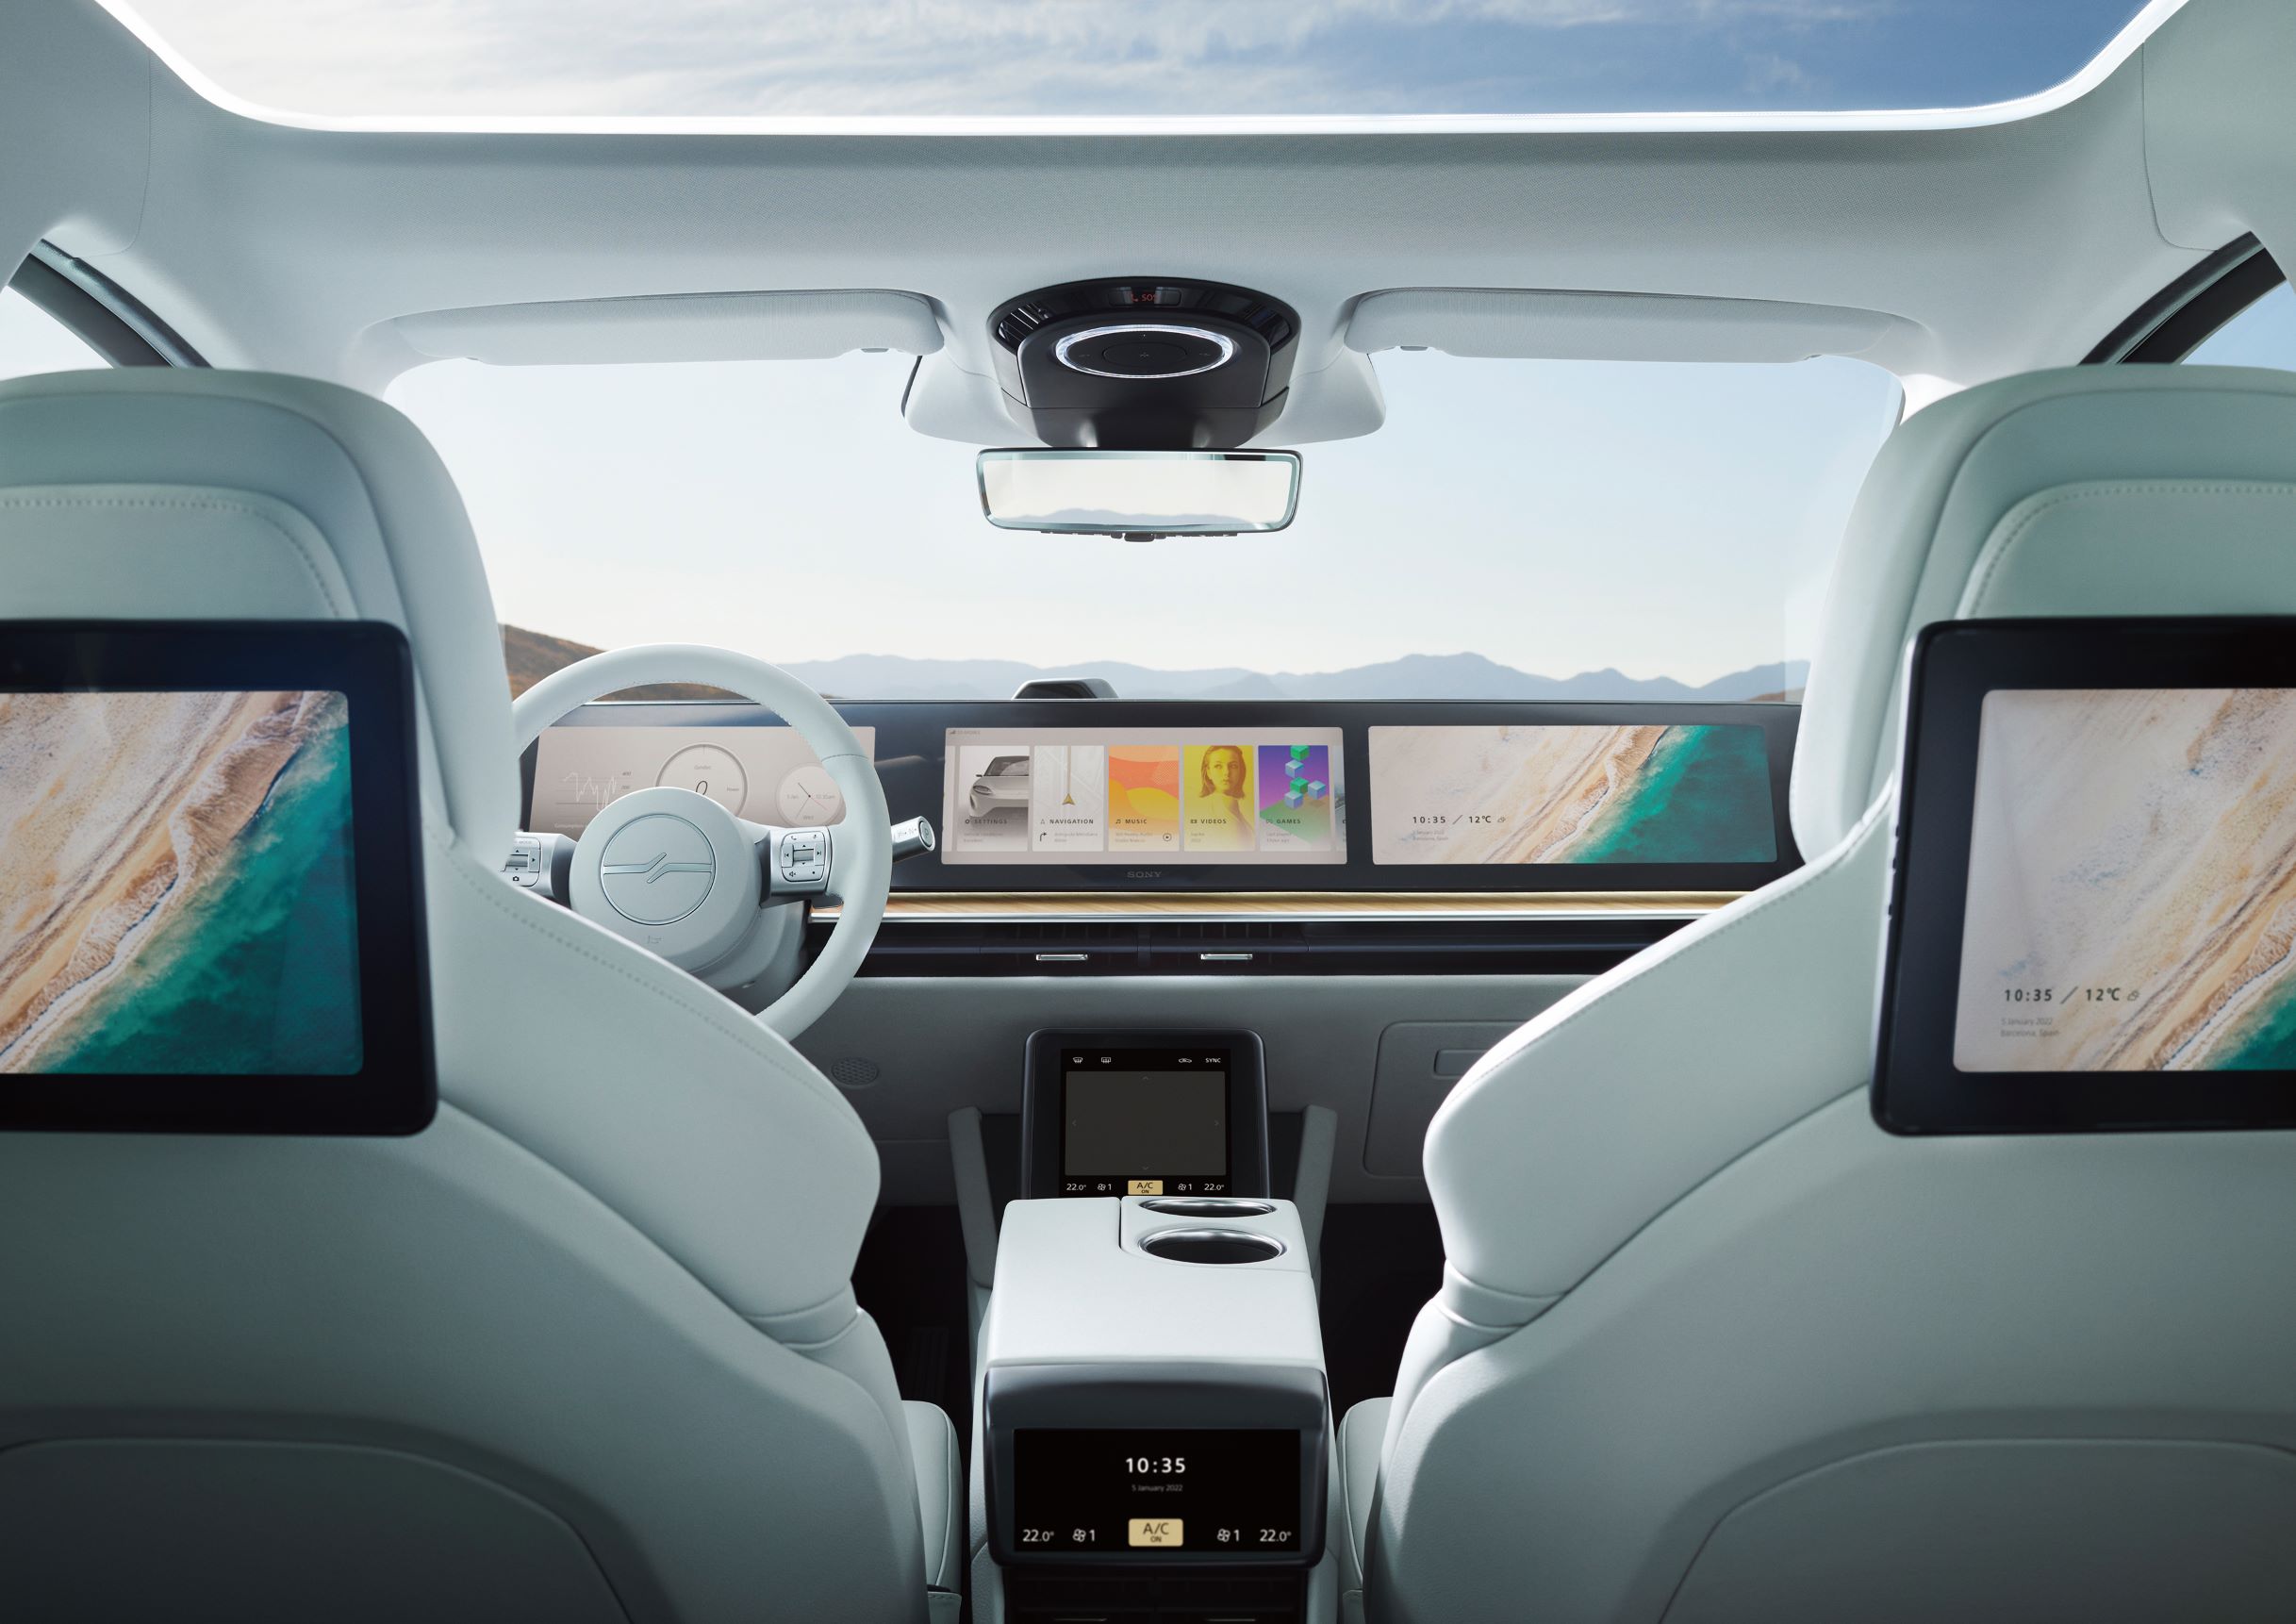 Vision-S 02 以 7 人座 9 螢幕設定，預示未來豪華休旅車的基本格局。